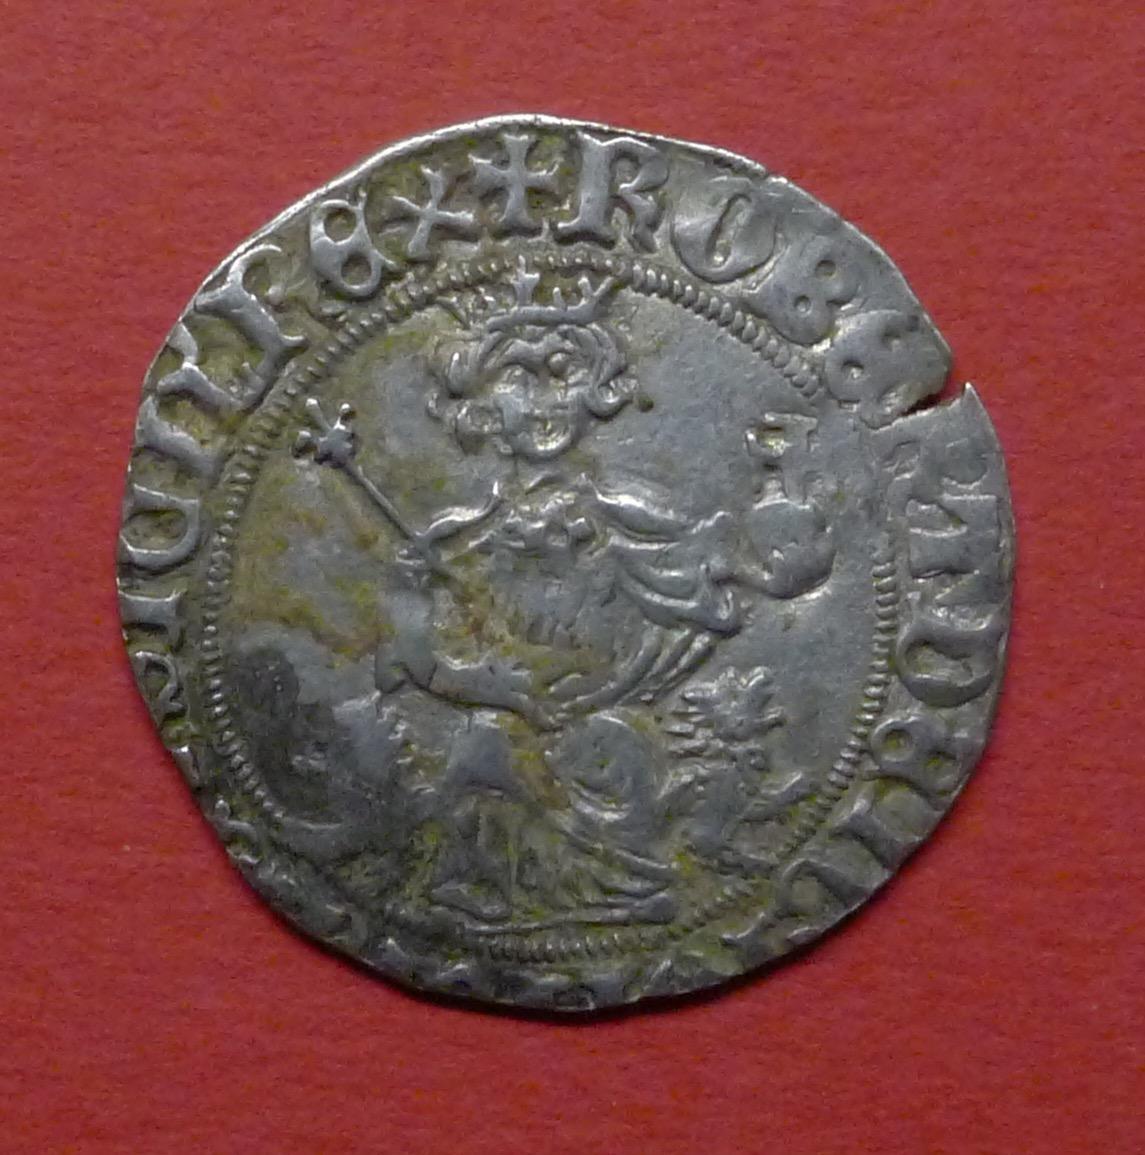 Strieborné Gigliato Robert I. z Anjou 1309-1343 Neapolské kráľovstvo - Zberateľstvo